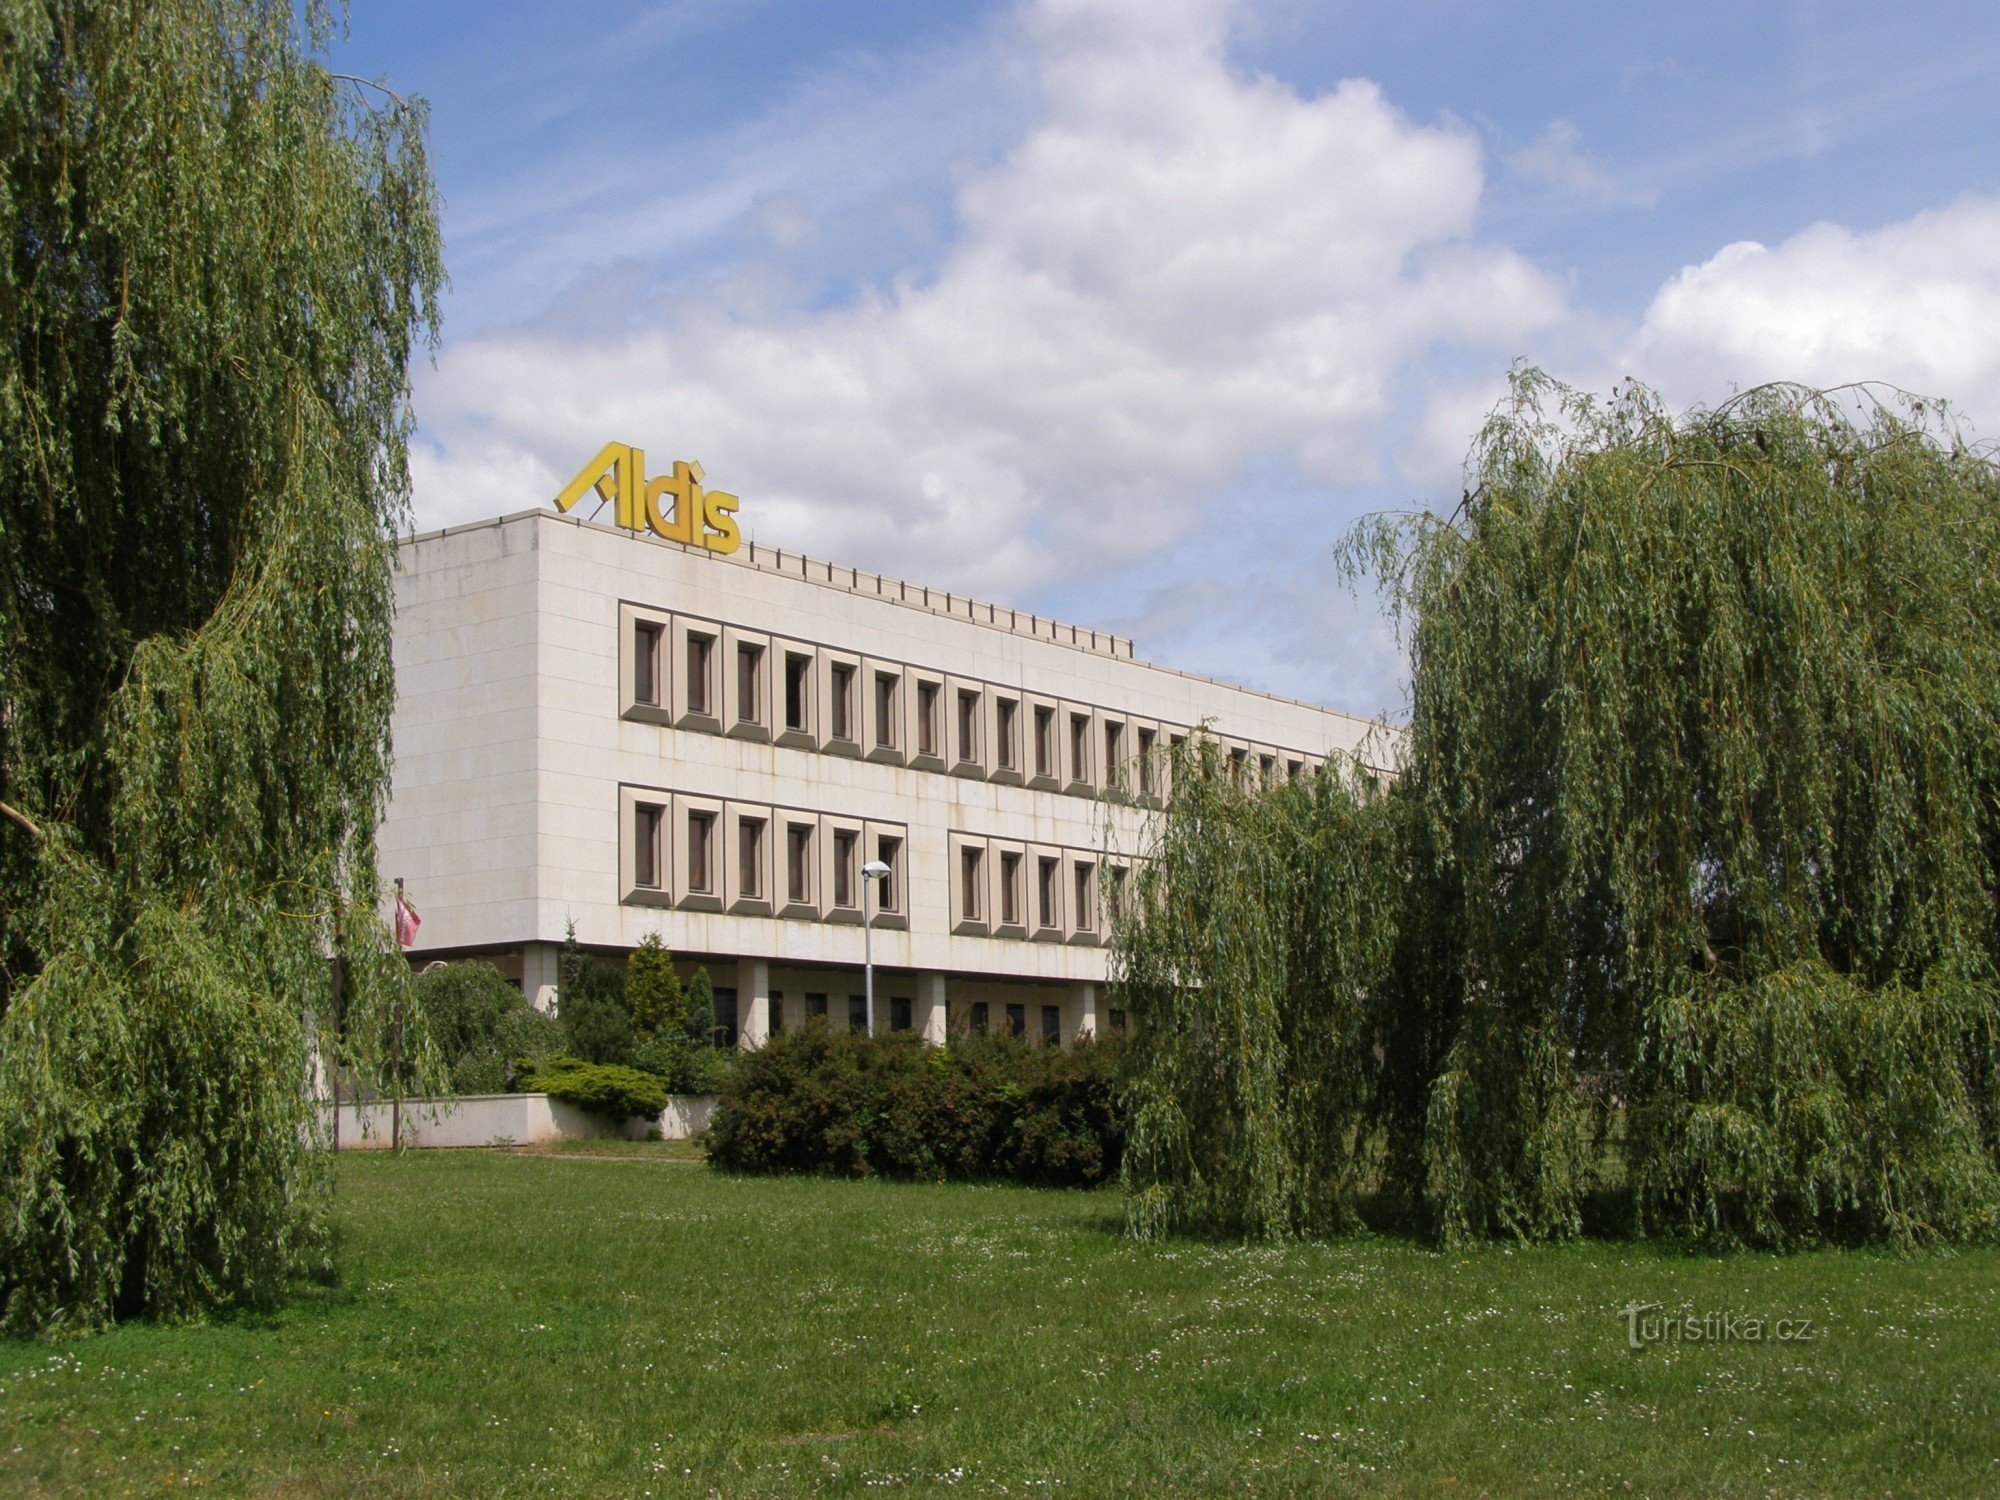 Hradec Králové - Aldis kongresszusi központ